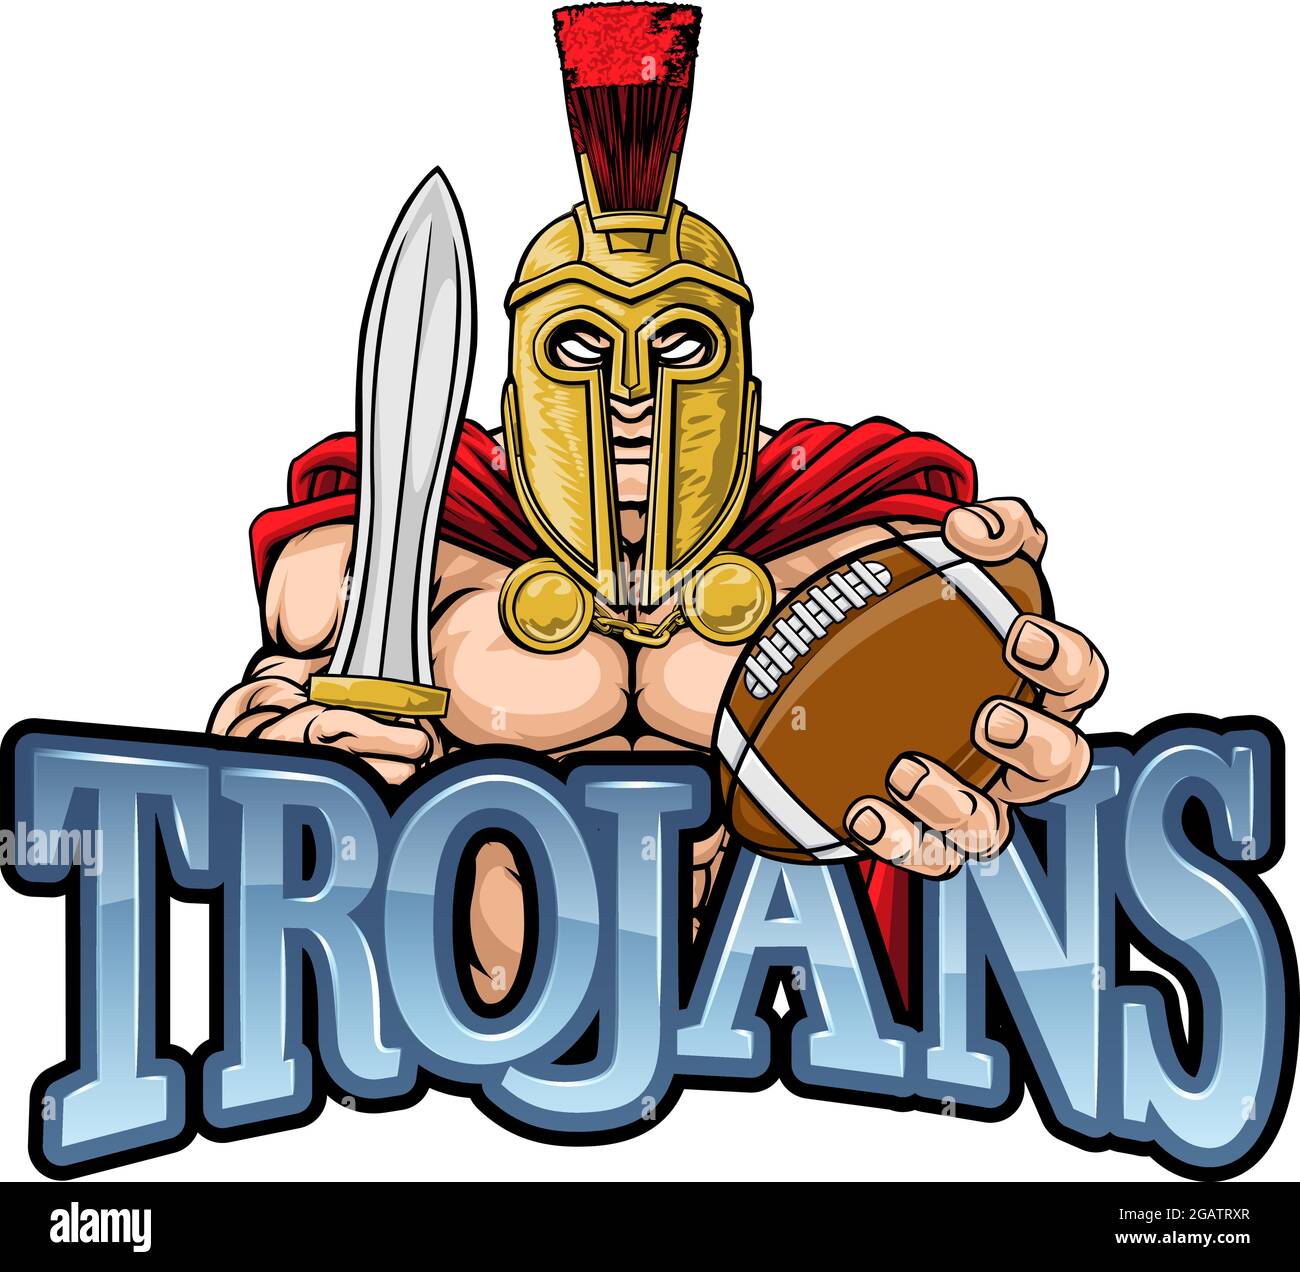 Trojan Spartan American Football Sports Mascot Illustrazione Vettoriale